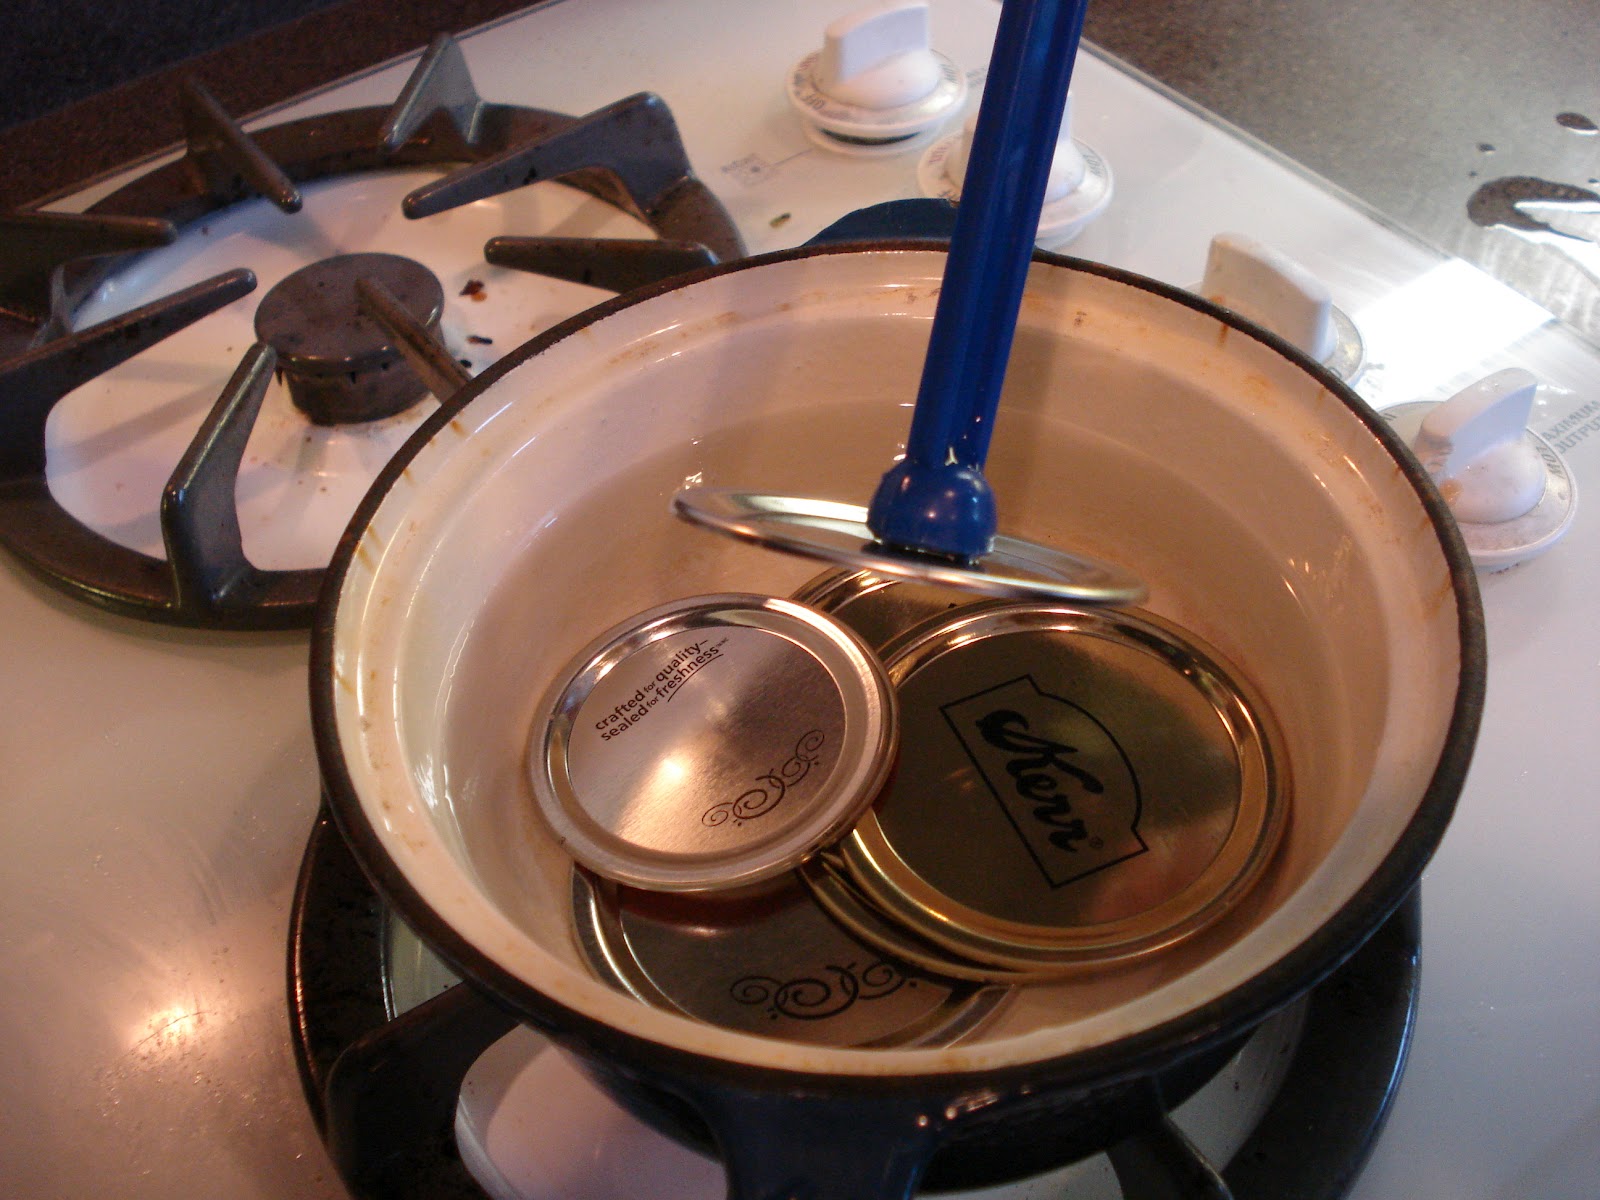 Remova tampas quentes de um recipiente com água quente